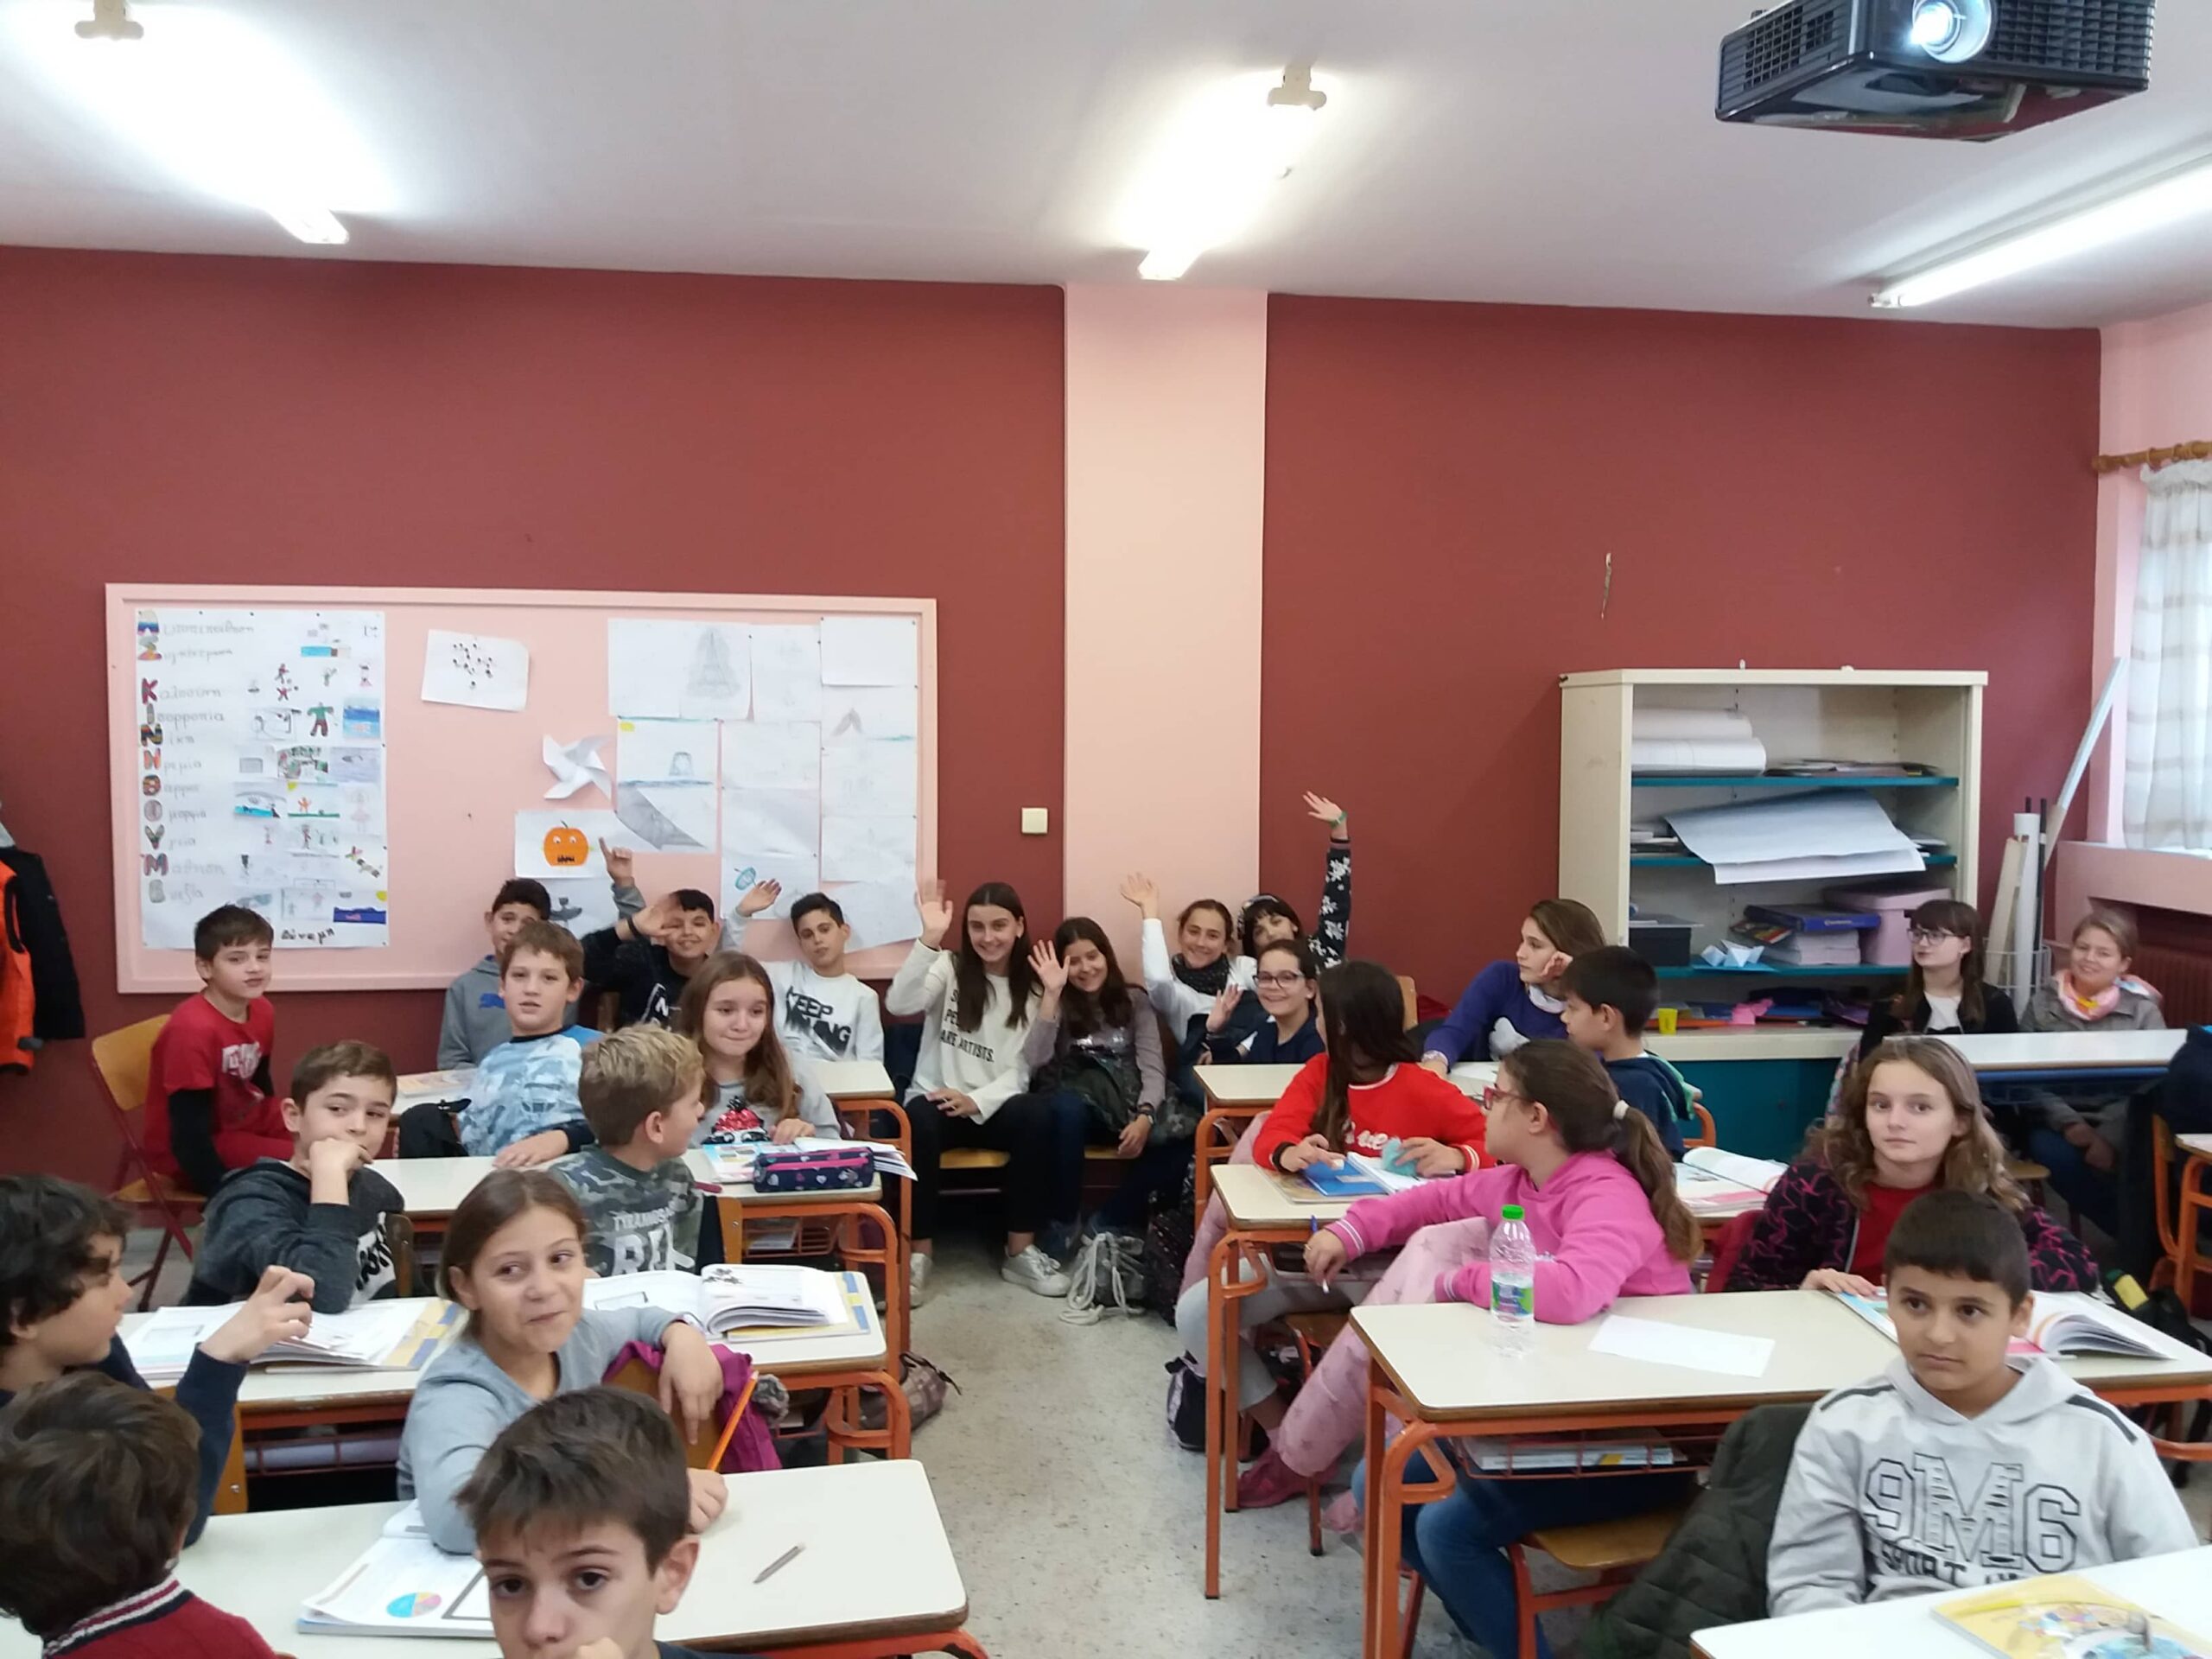 ¡Inolvidable experiencia! Alumnos y maestros del colegio Ruperto Chapí viajan a Grecia